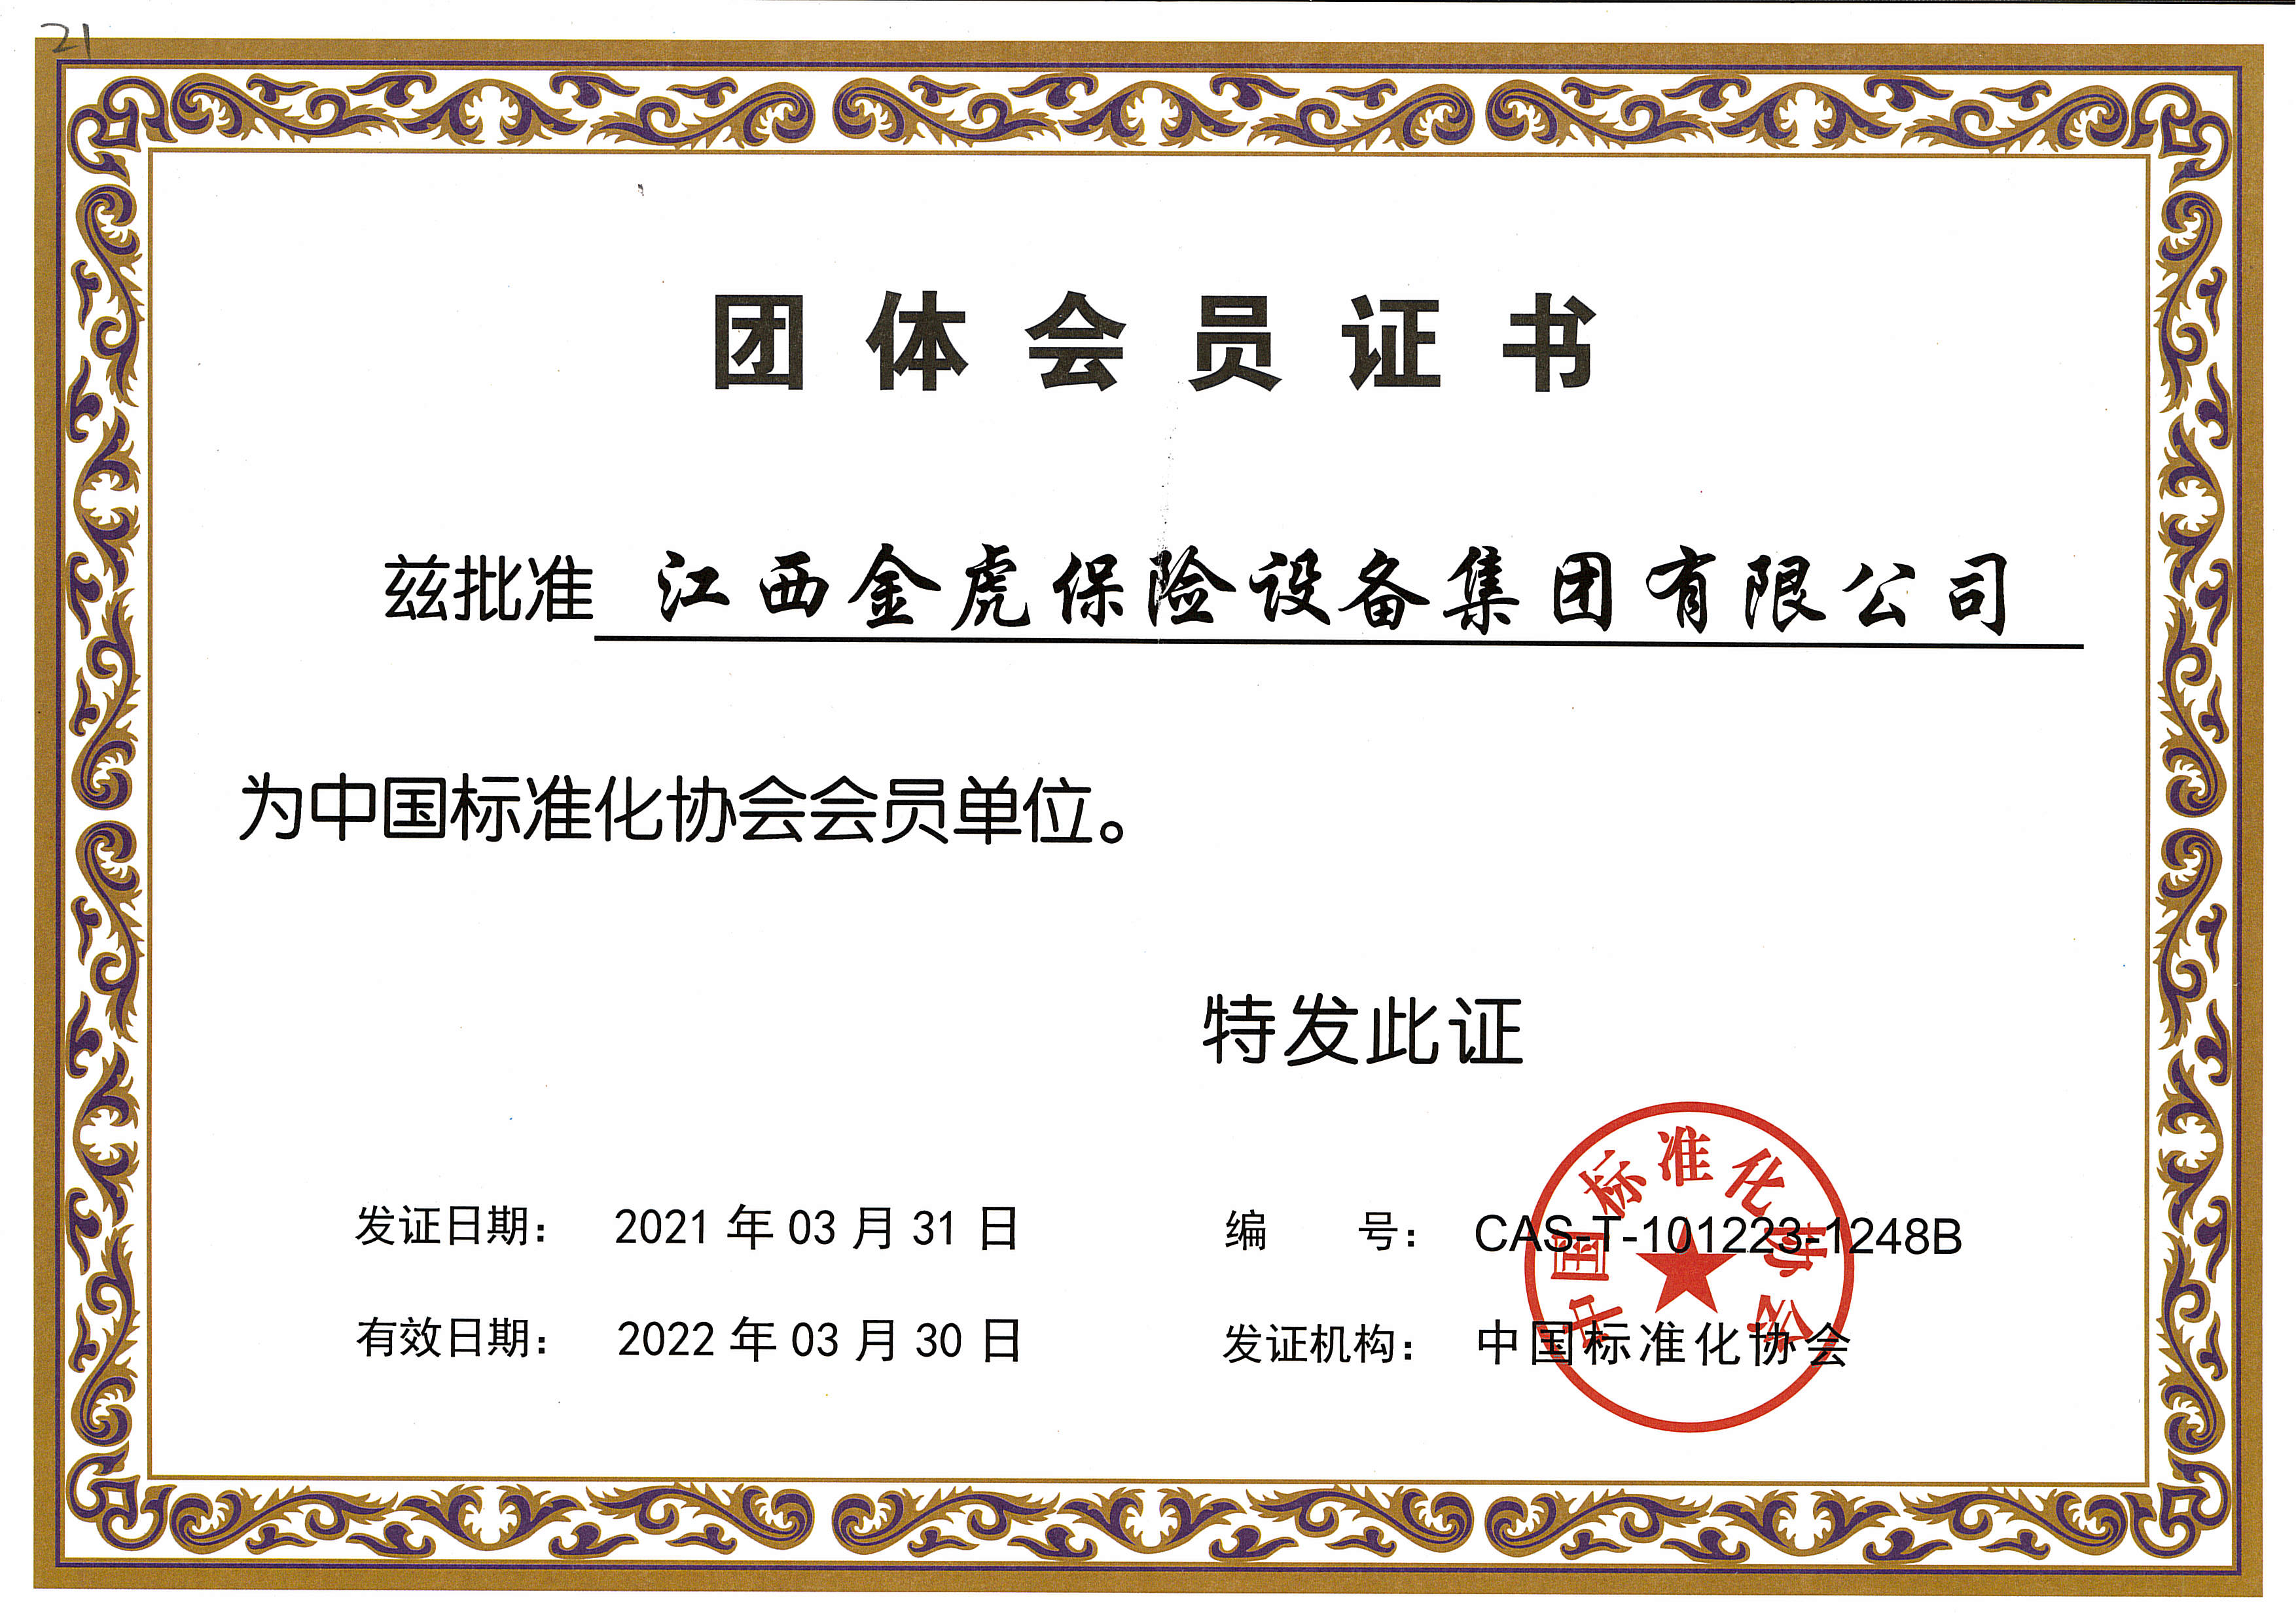 中国标准化协会会员单位